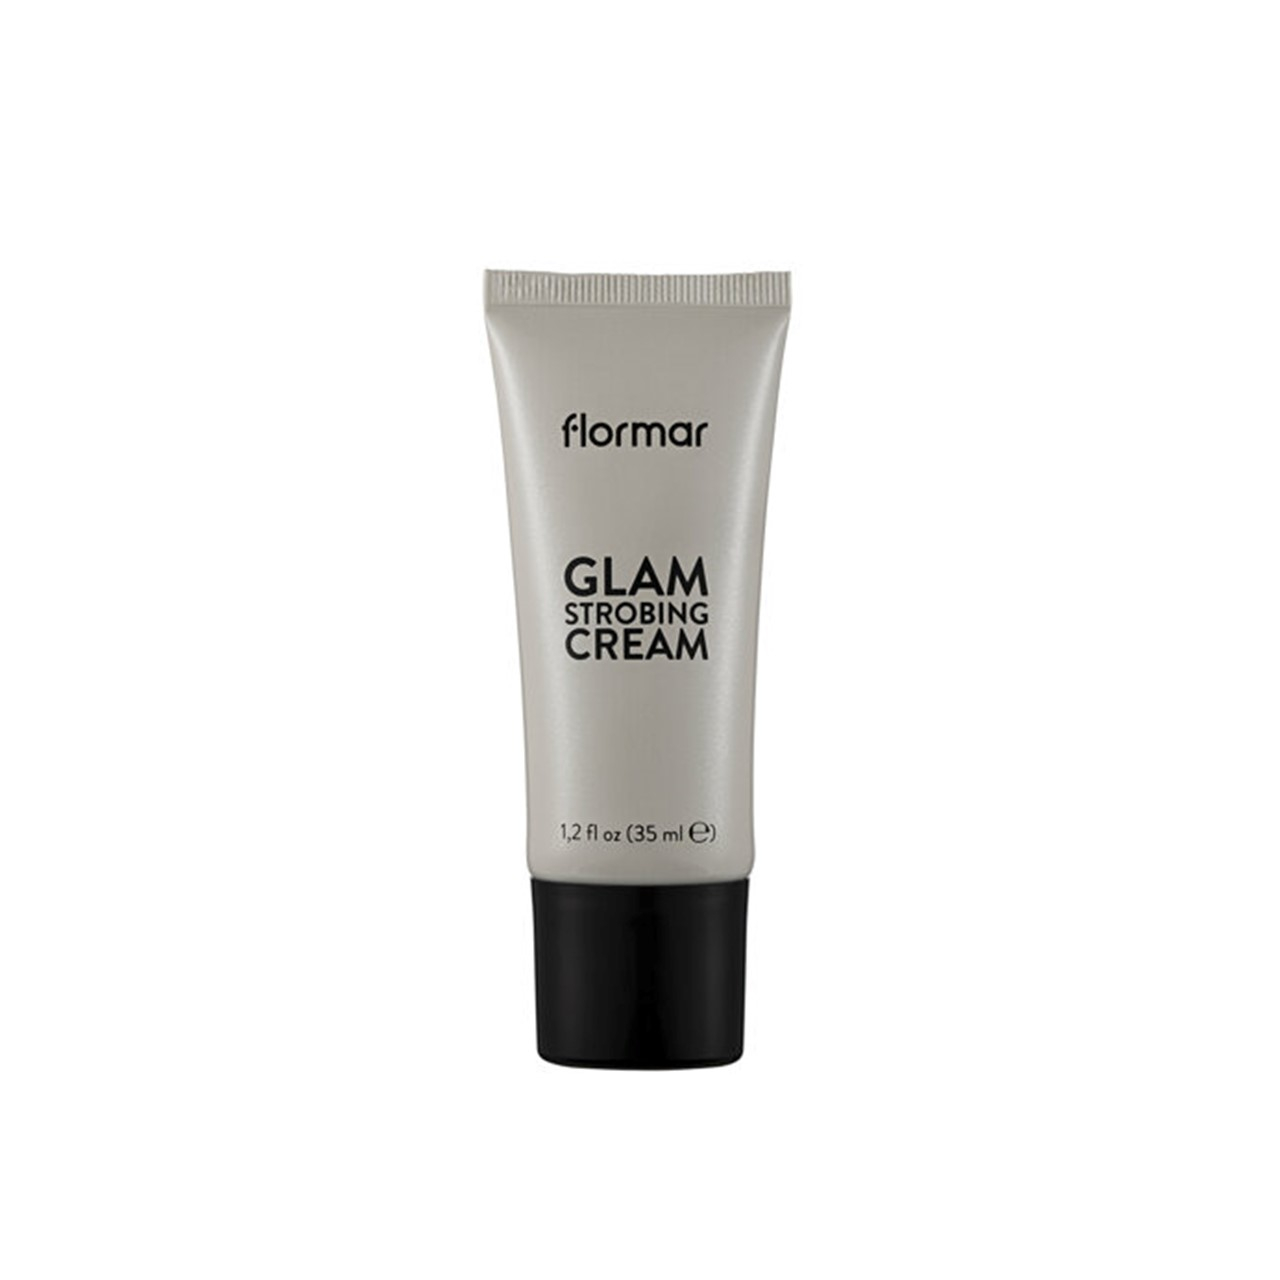 Flormar Glam Strobing Cream 01 Silver 35ml